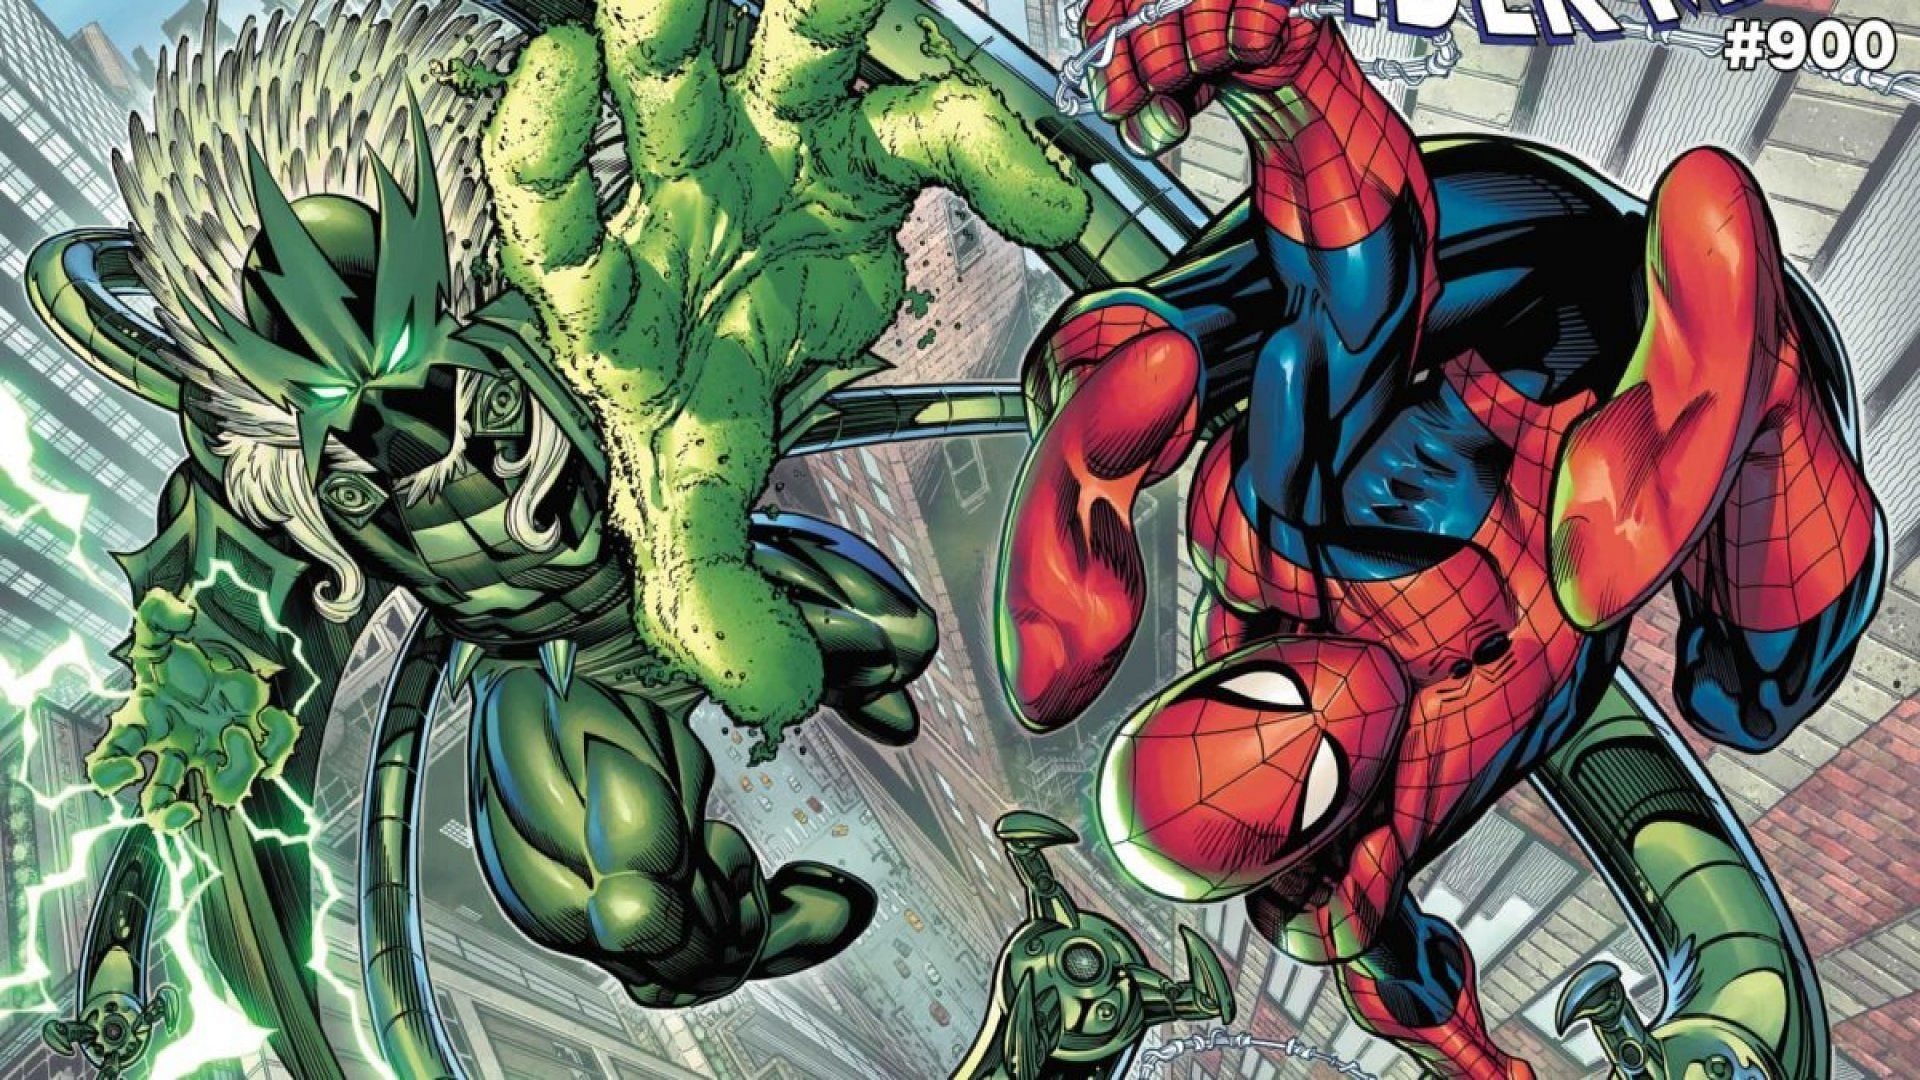 Spidey fights Sinister Six Adaptoid (Image via Marvel Comics)